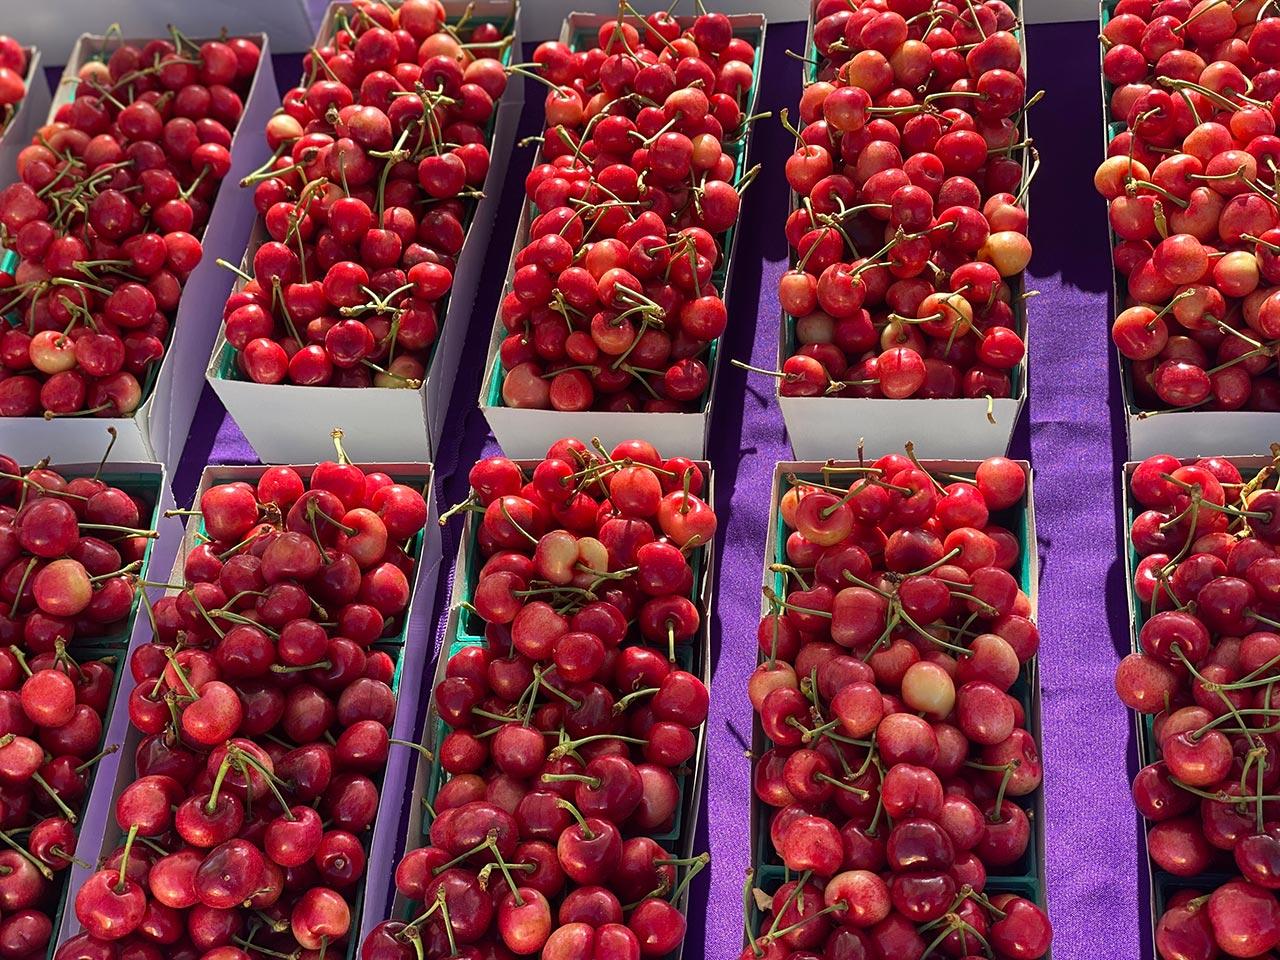 U-Pick Cherries Comes to Dell’Osso Family Farm!